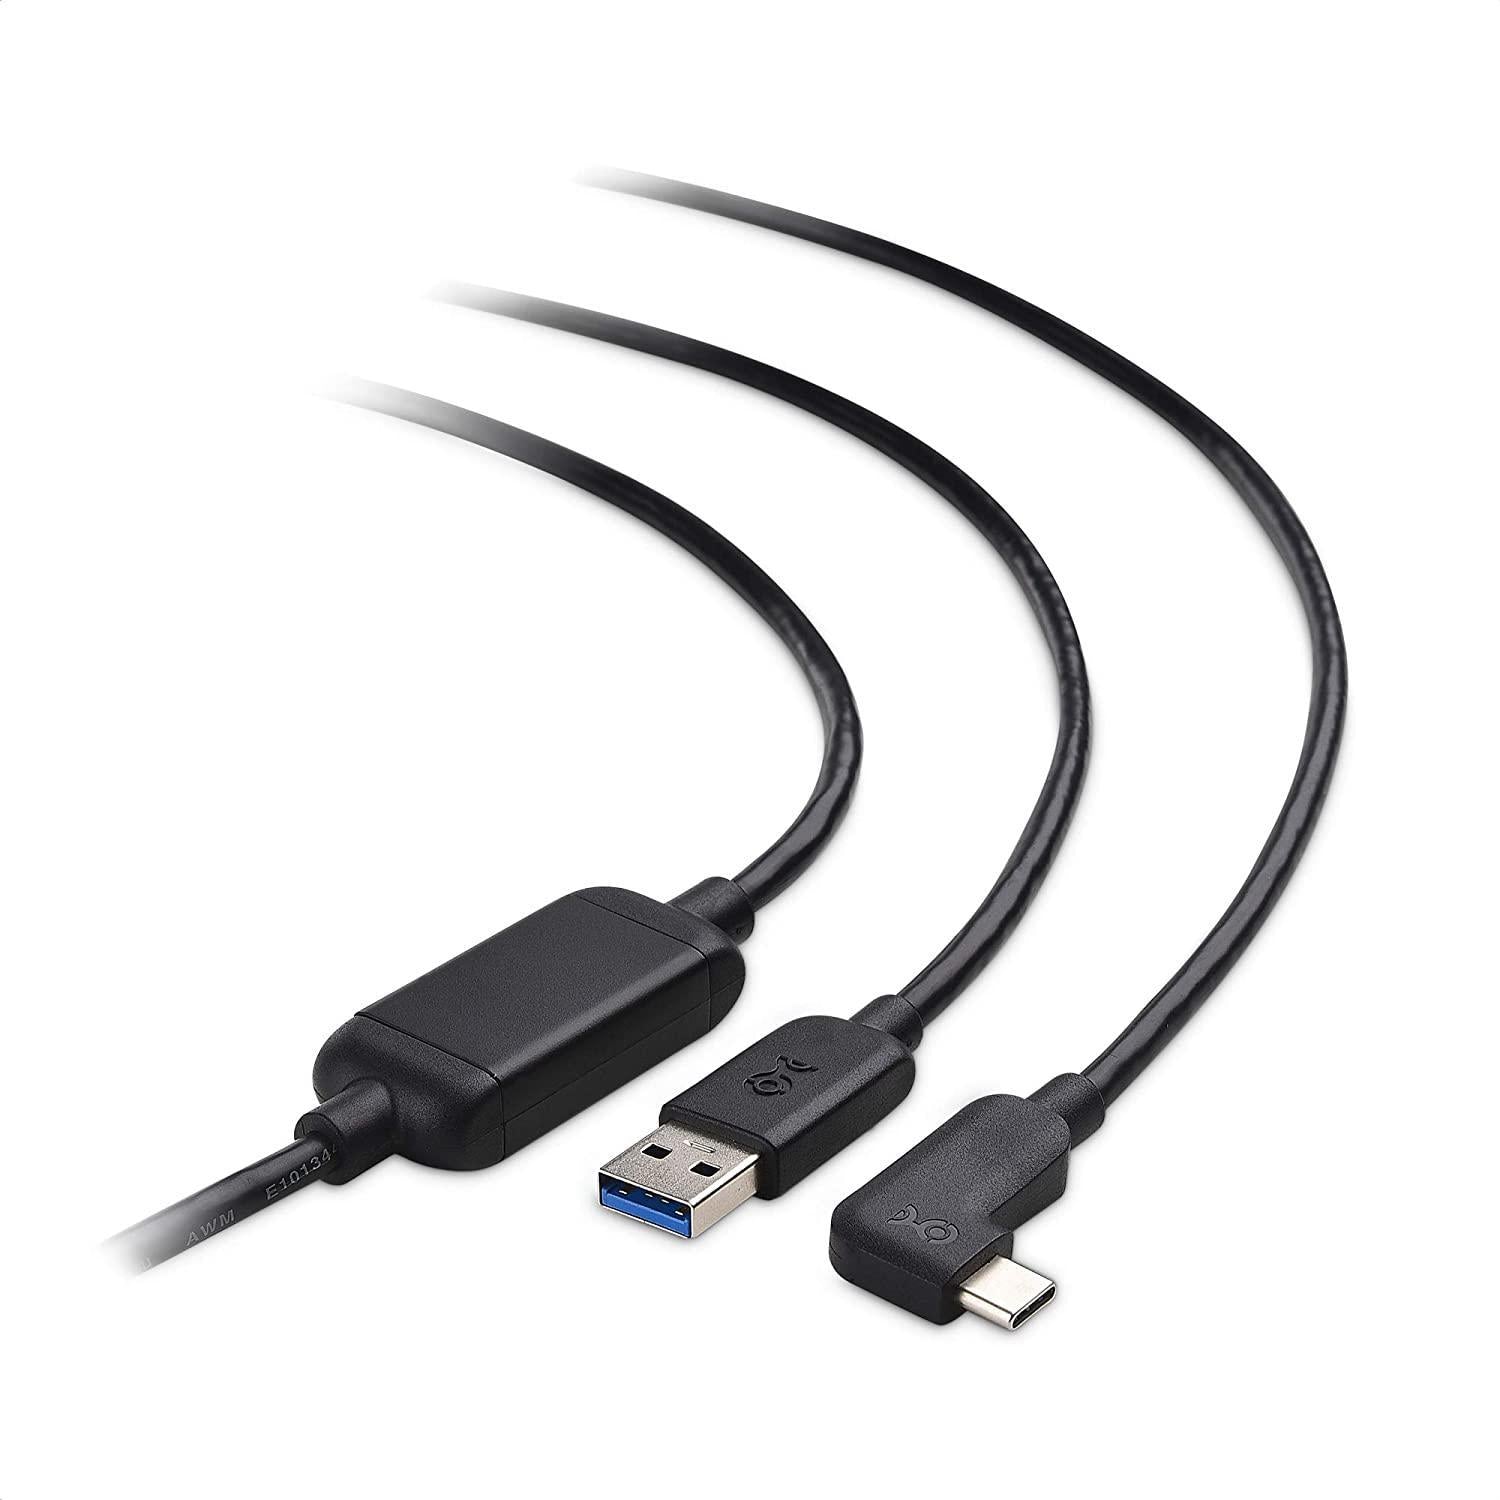 Cable Matters aktivt 5m USB-C til USB-A VR Link-kabel til Oculus Quest 2 USB3.2 Gen1 5Gbps 3A Super Speed VR Link-kabel